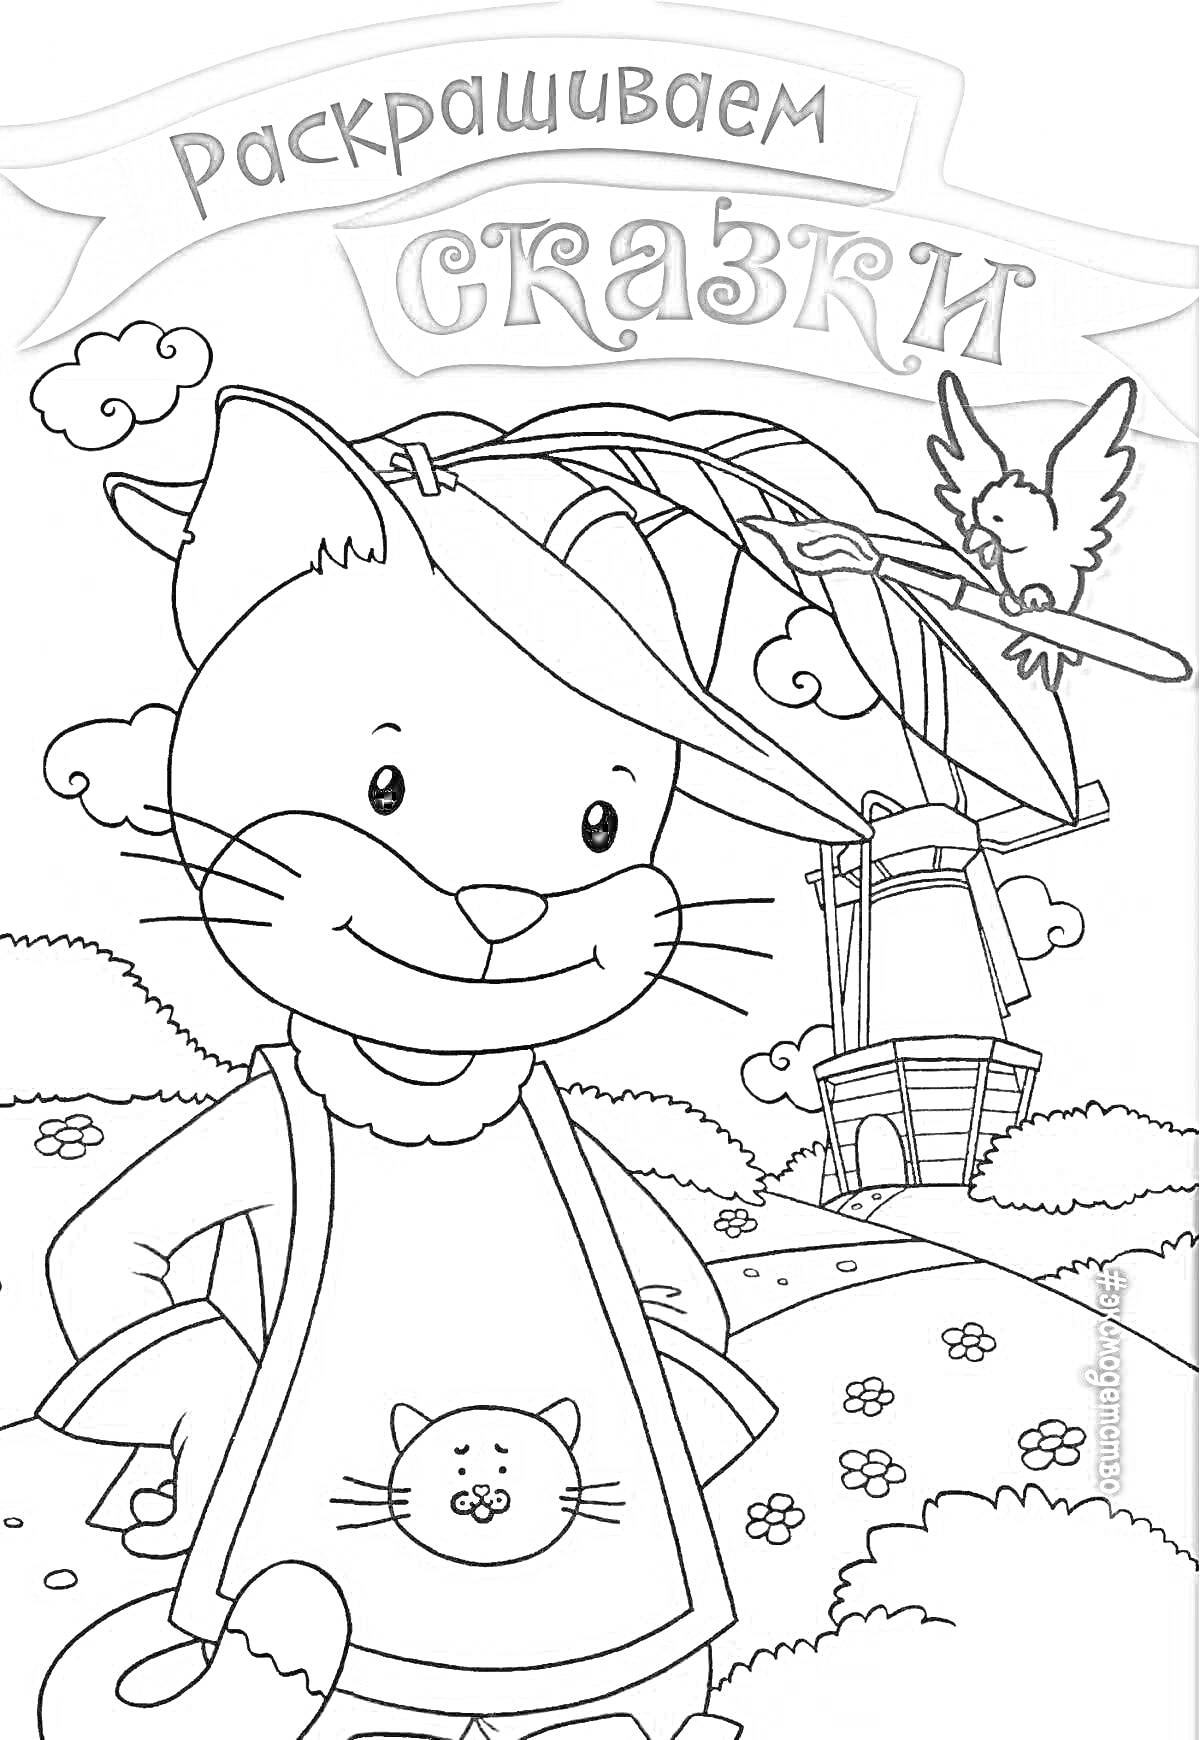 Кот в сапогах, в шляпе с пером, рядом с ветряной мельницей и птицей